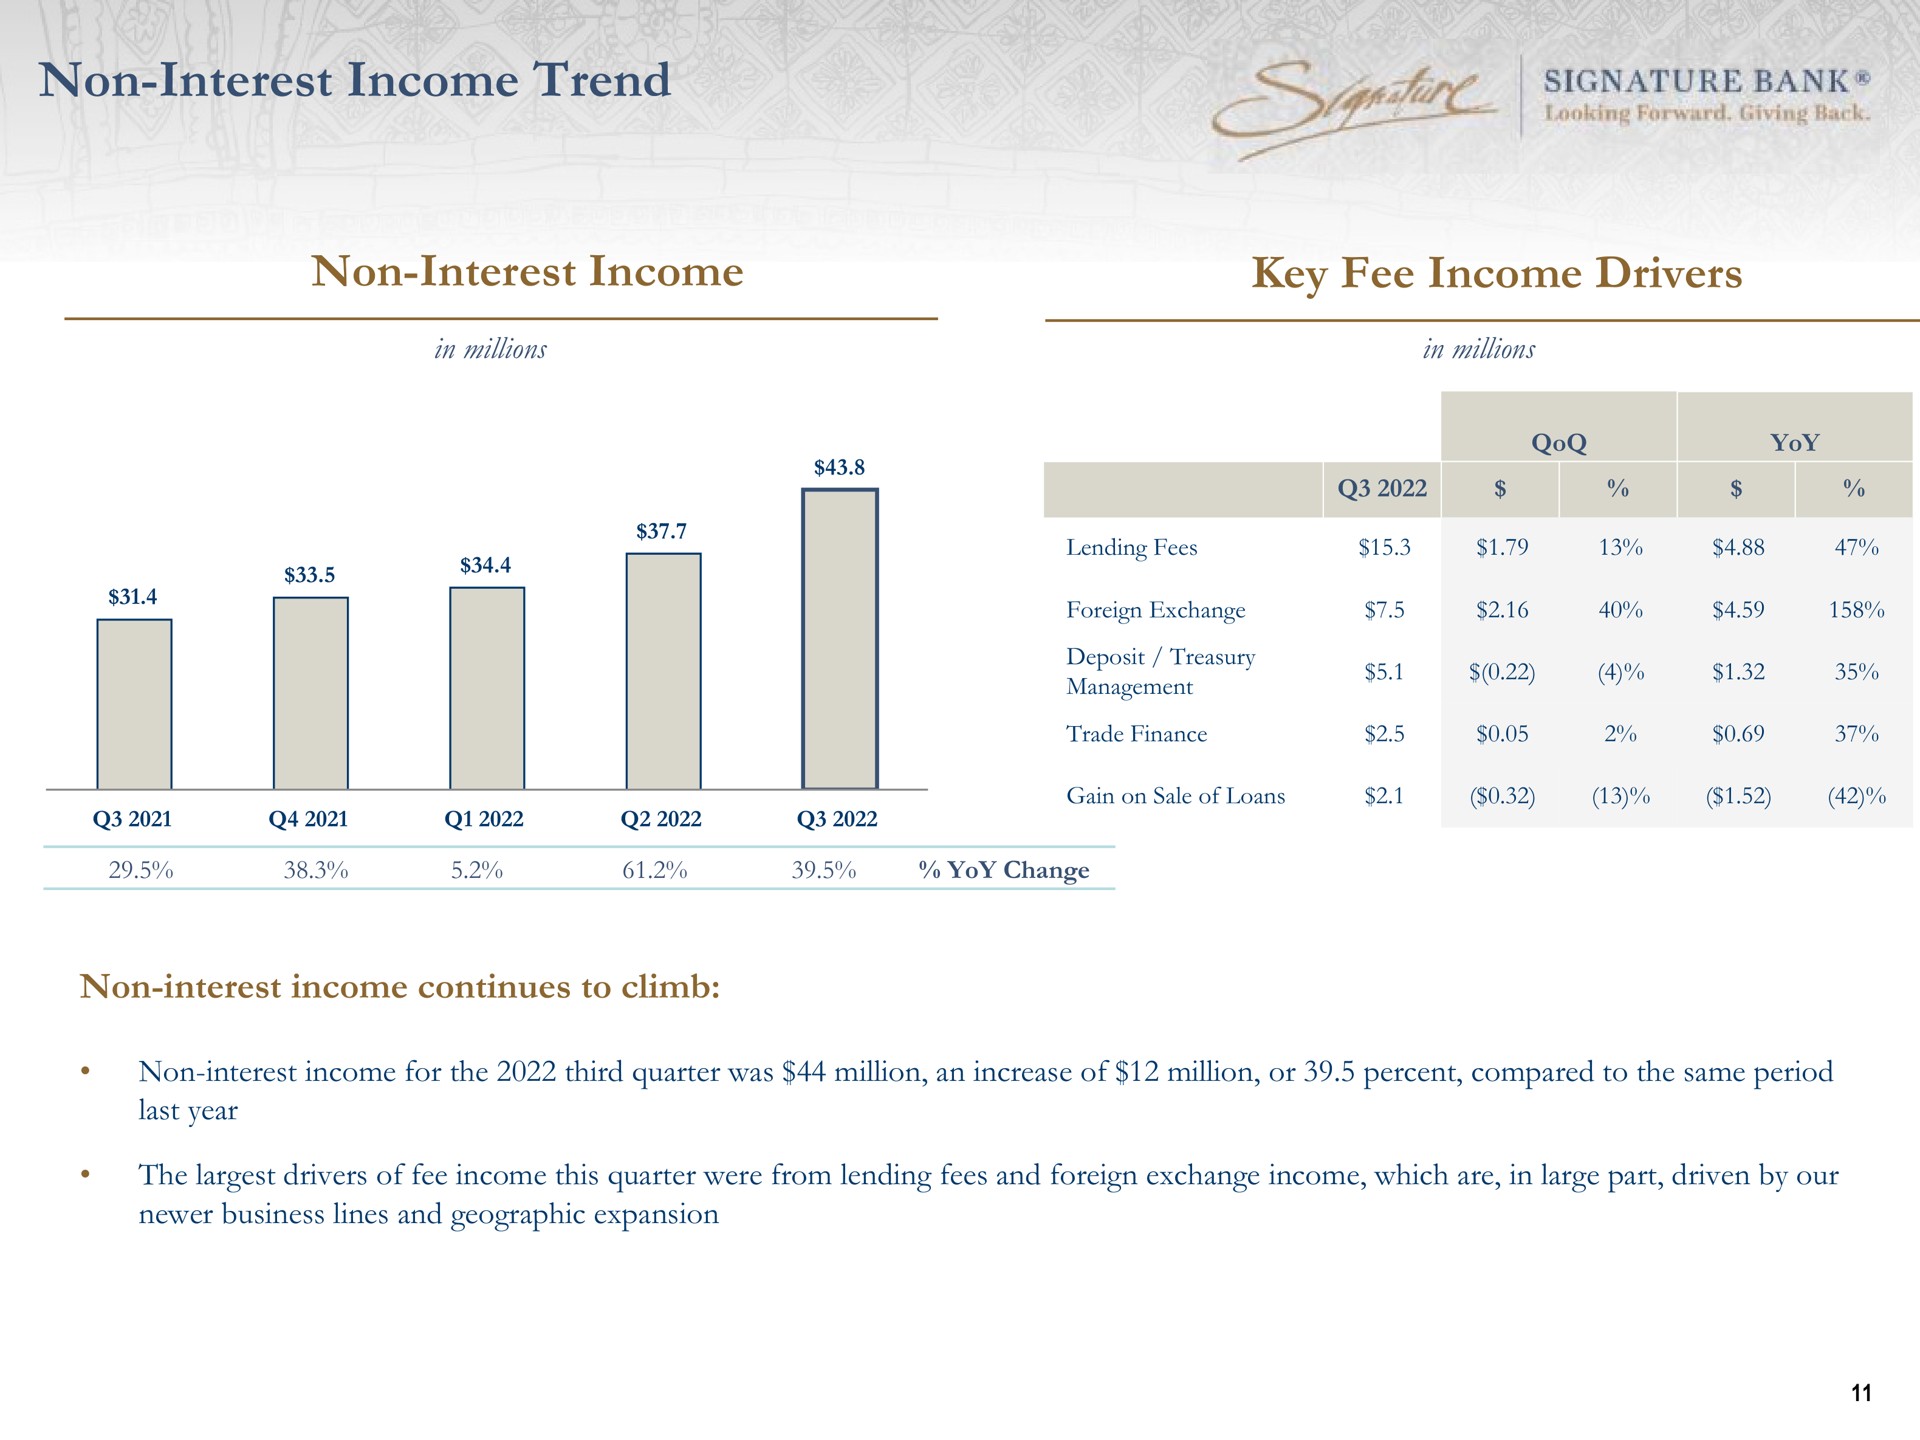 non interest income trend non interest income key fee income drivers signature bank i | Signature Bank